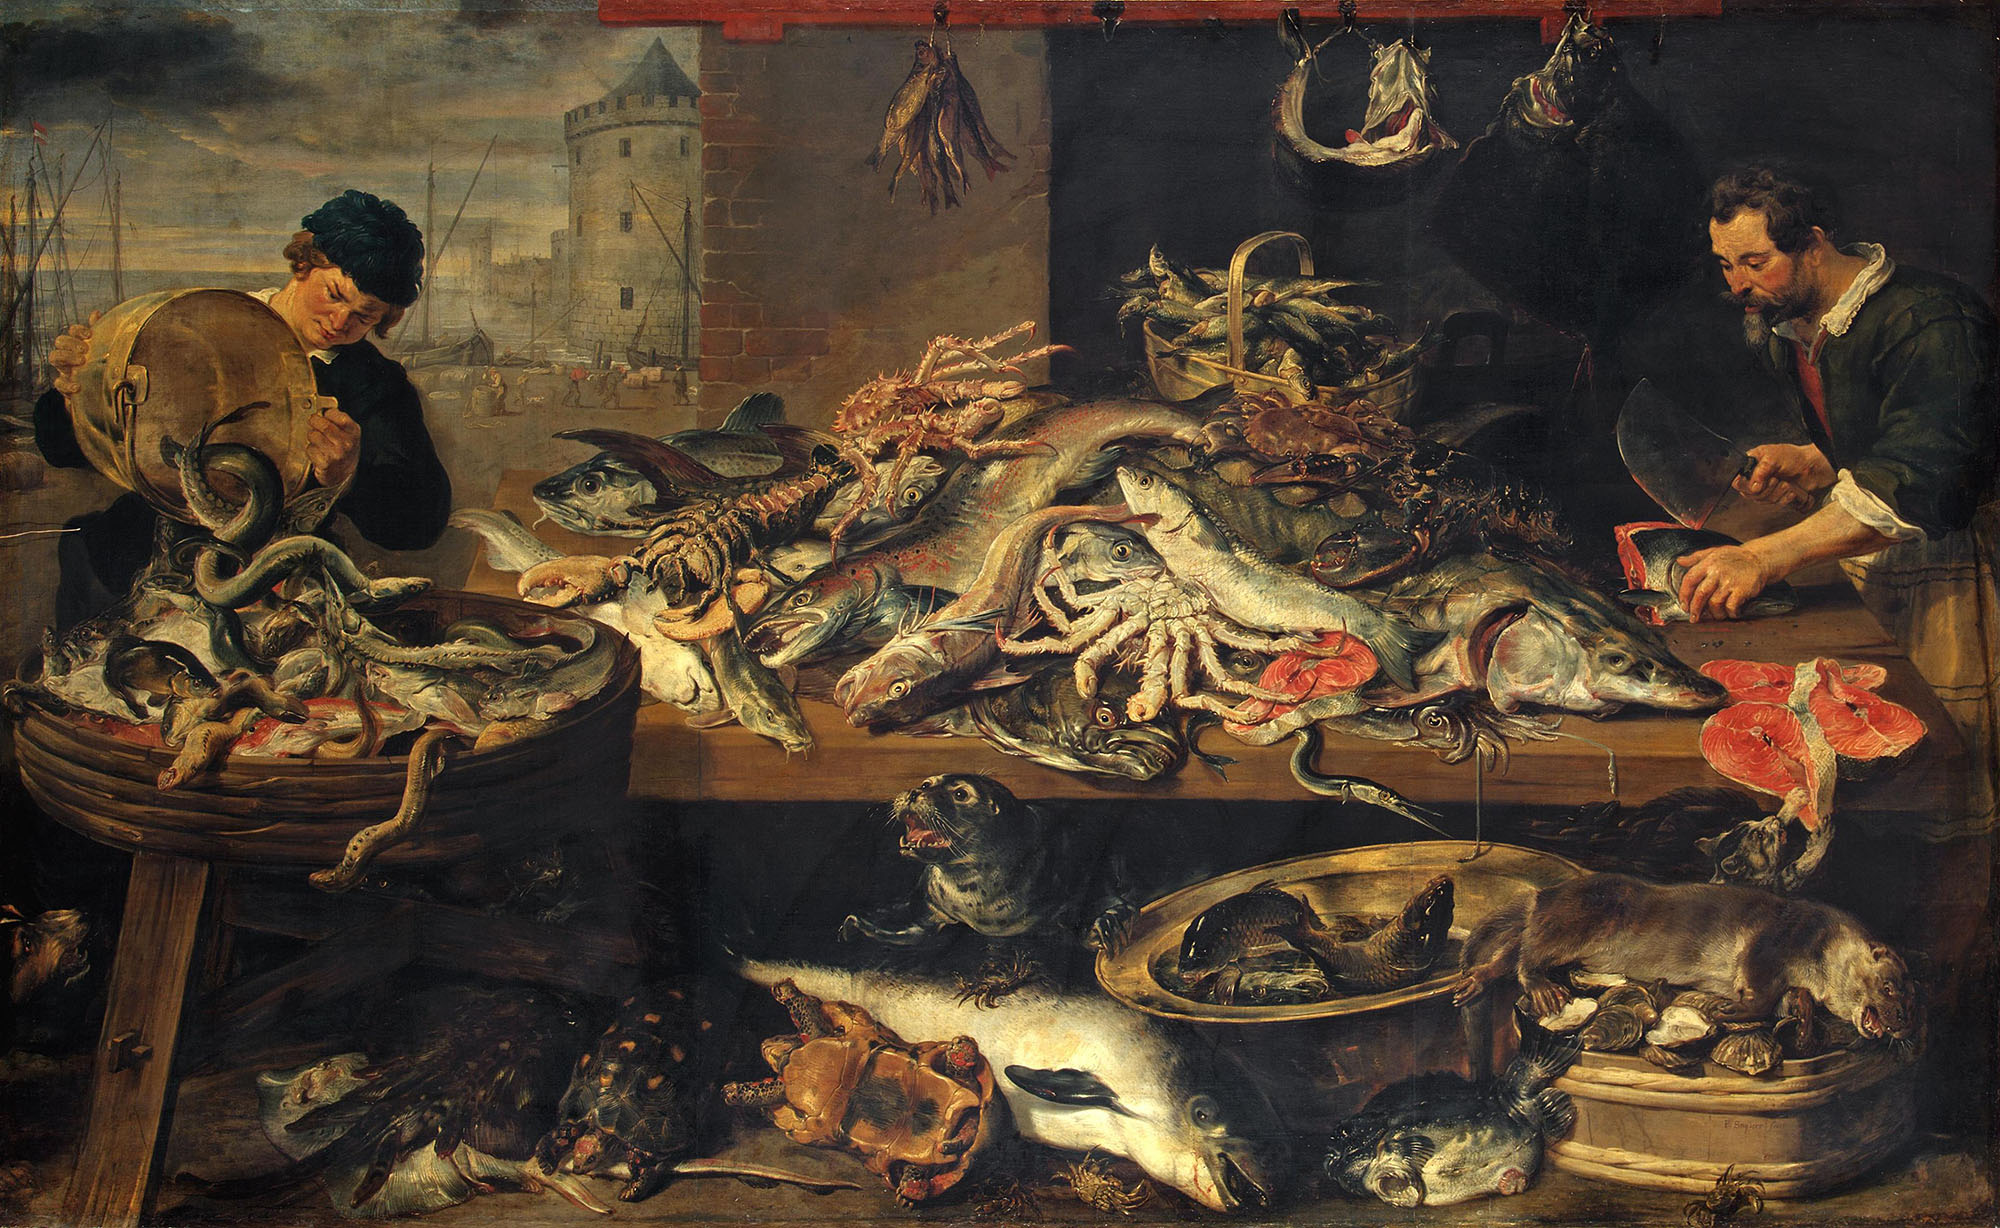 Франс Снейдерс, Ян Вильденс (пейзаж). "Рыбная лавка". Между 1618-1621. Эрмитаж, Санкт-Петербург.